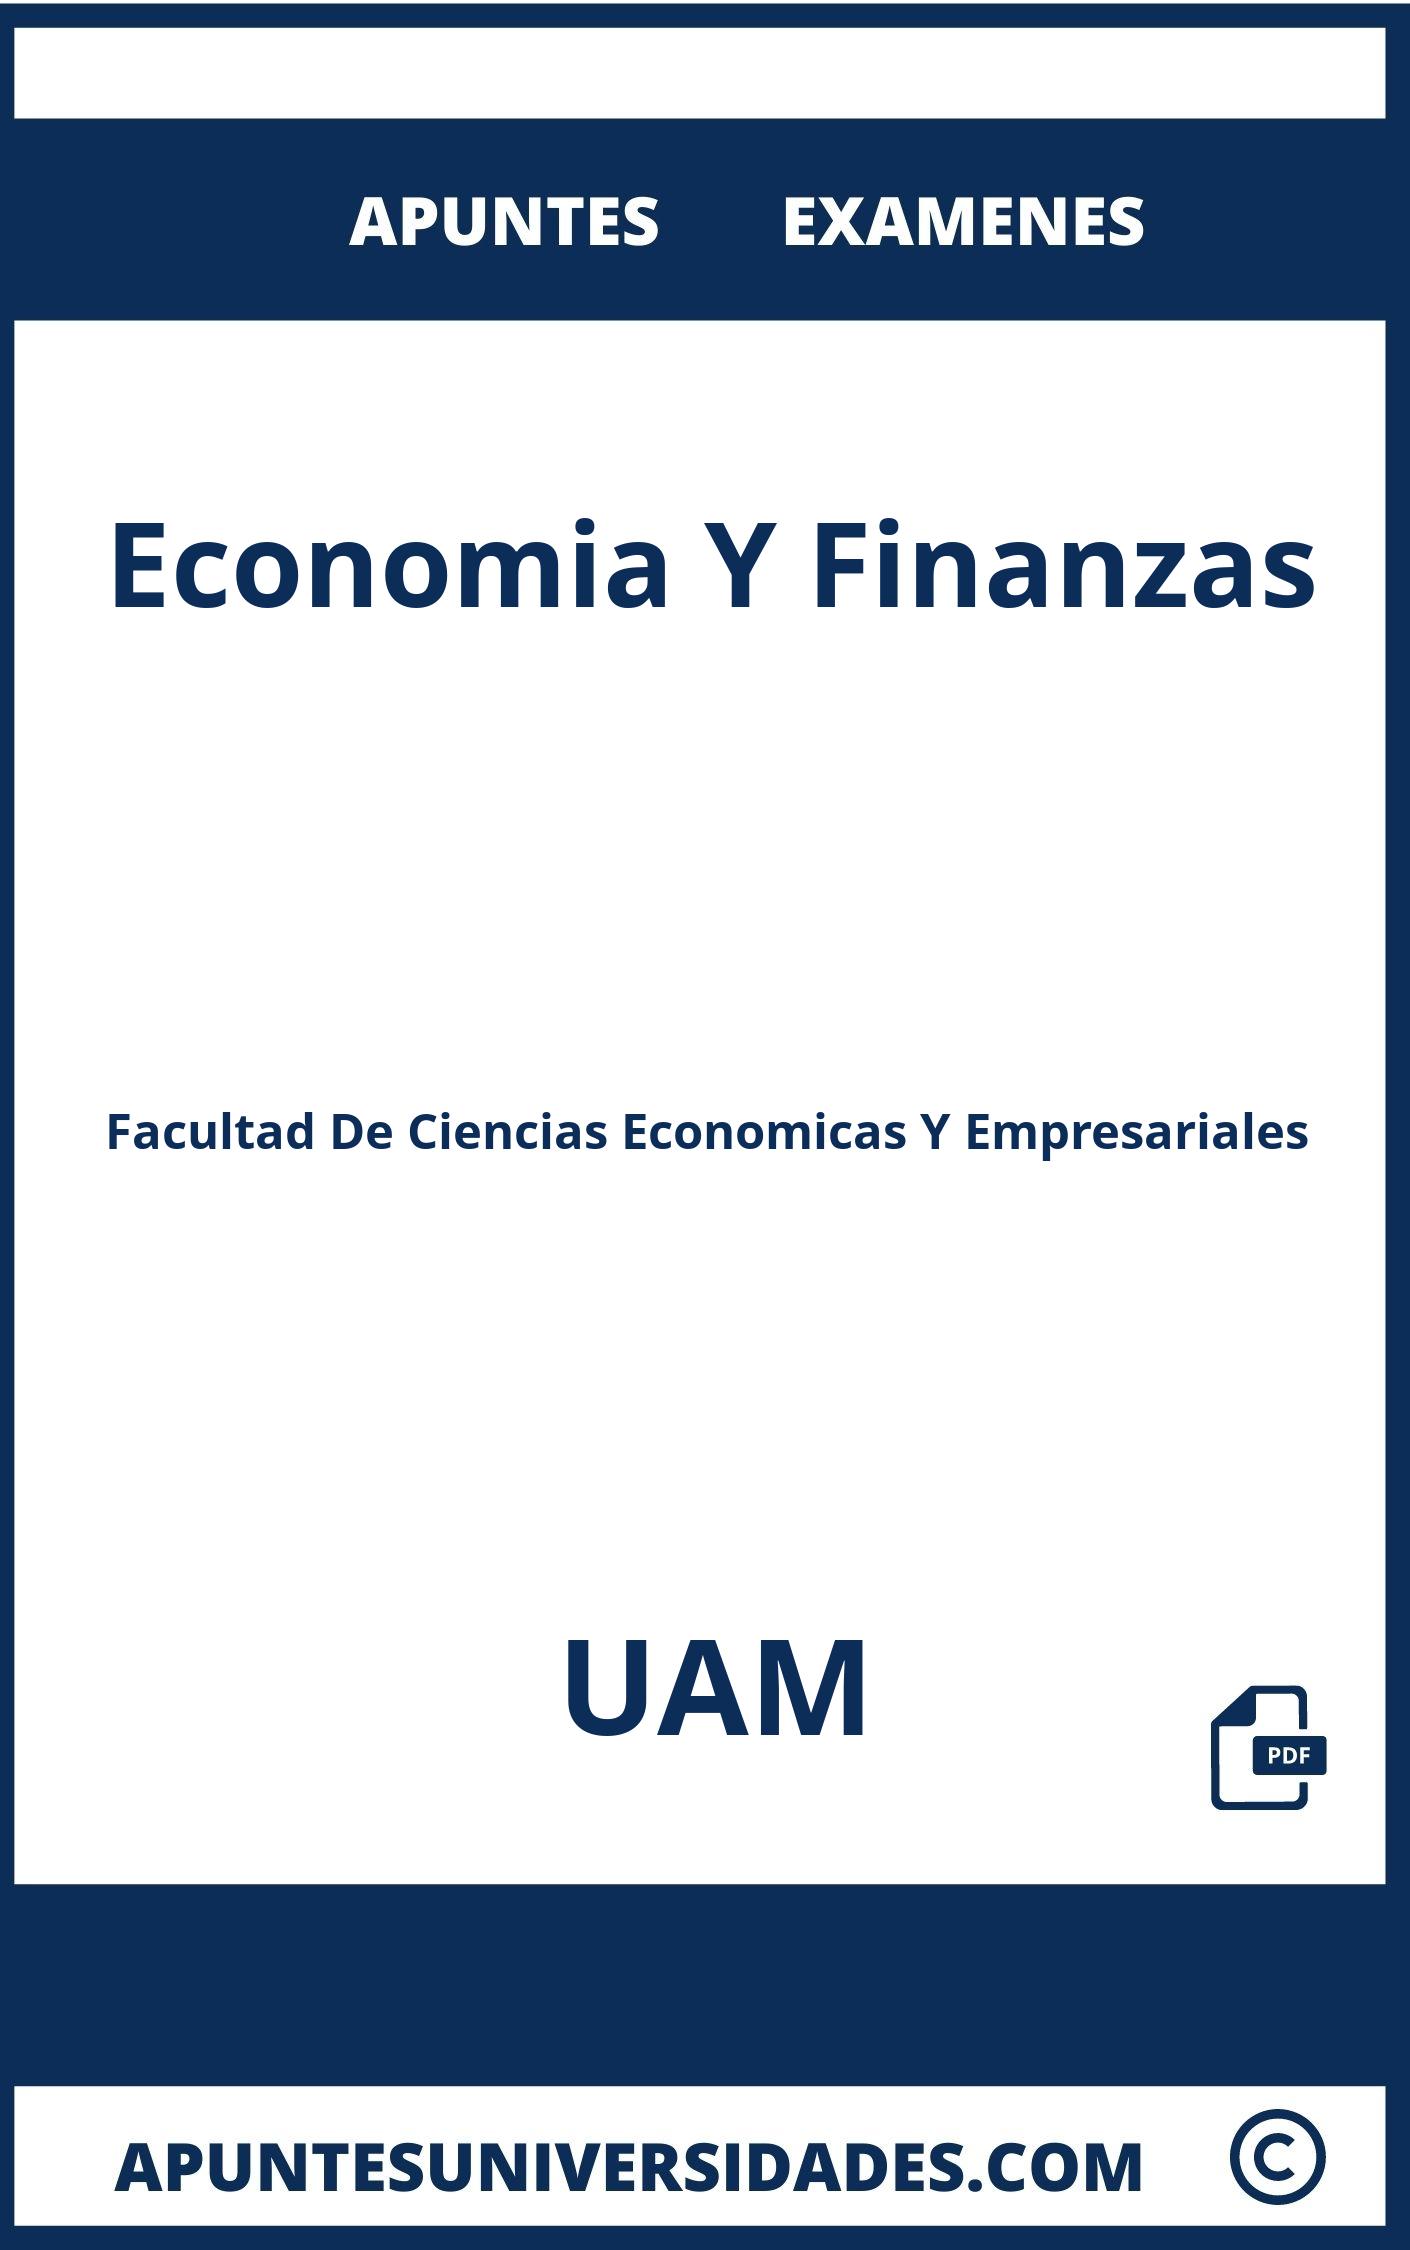 Examenes Apuntes Economia Y Finanzas UAM